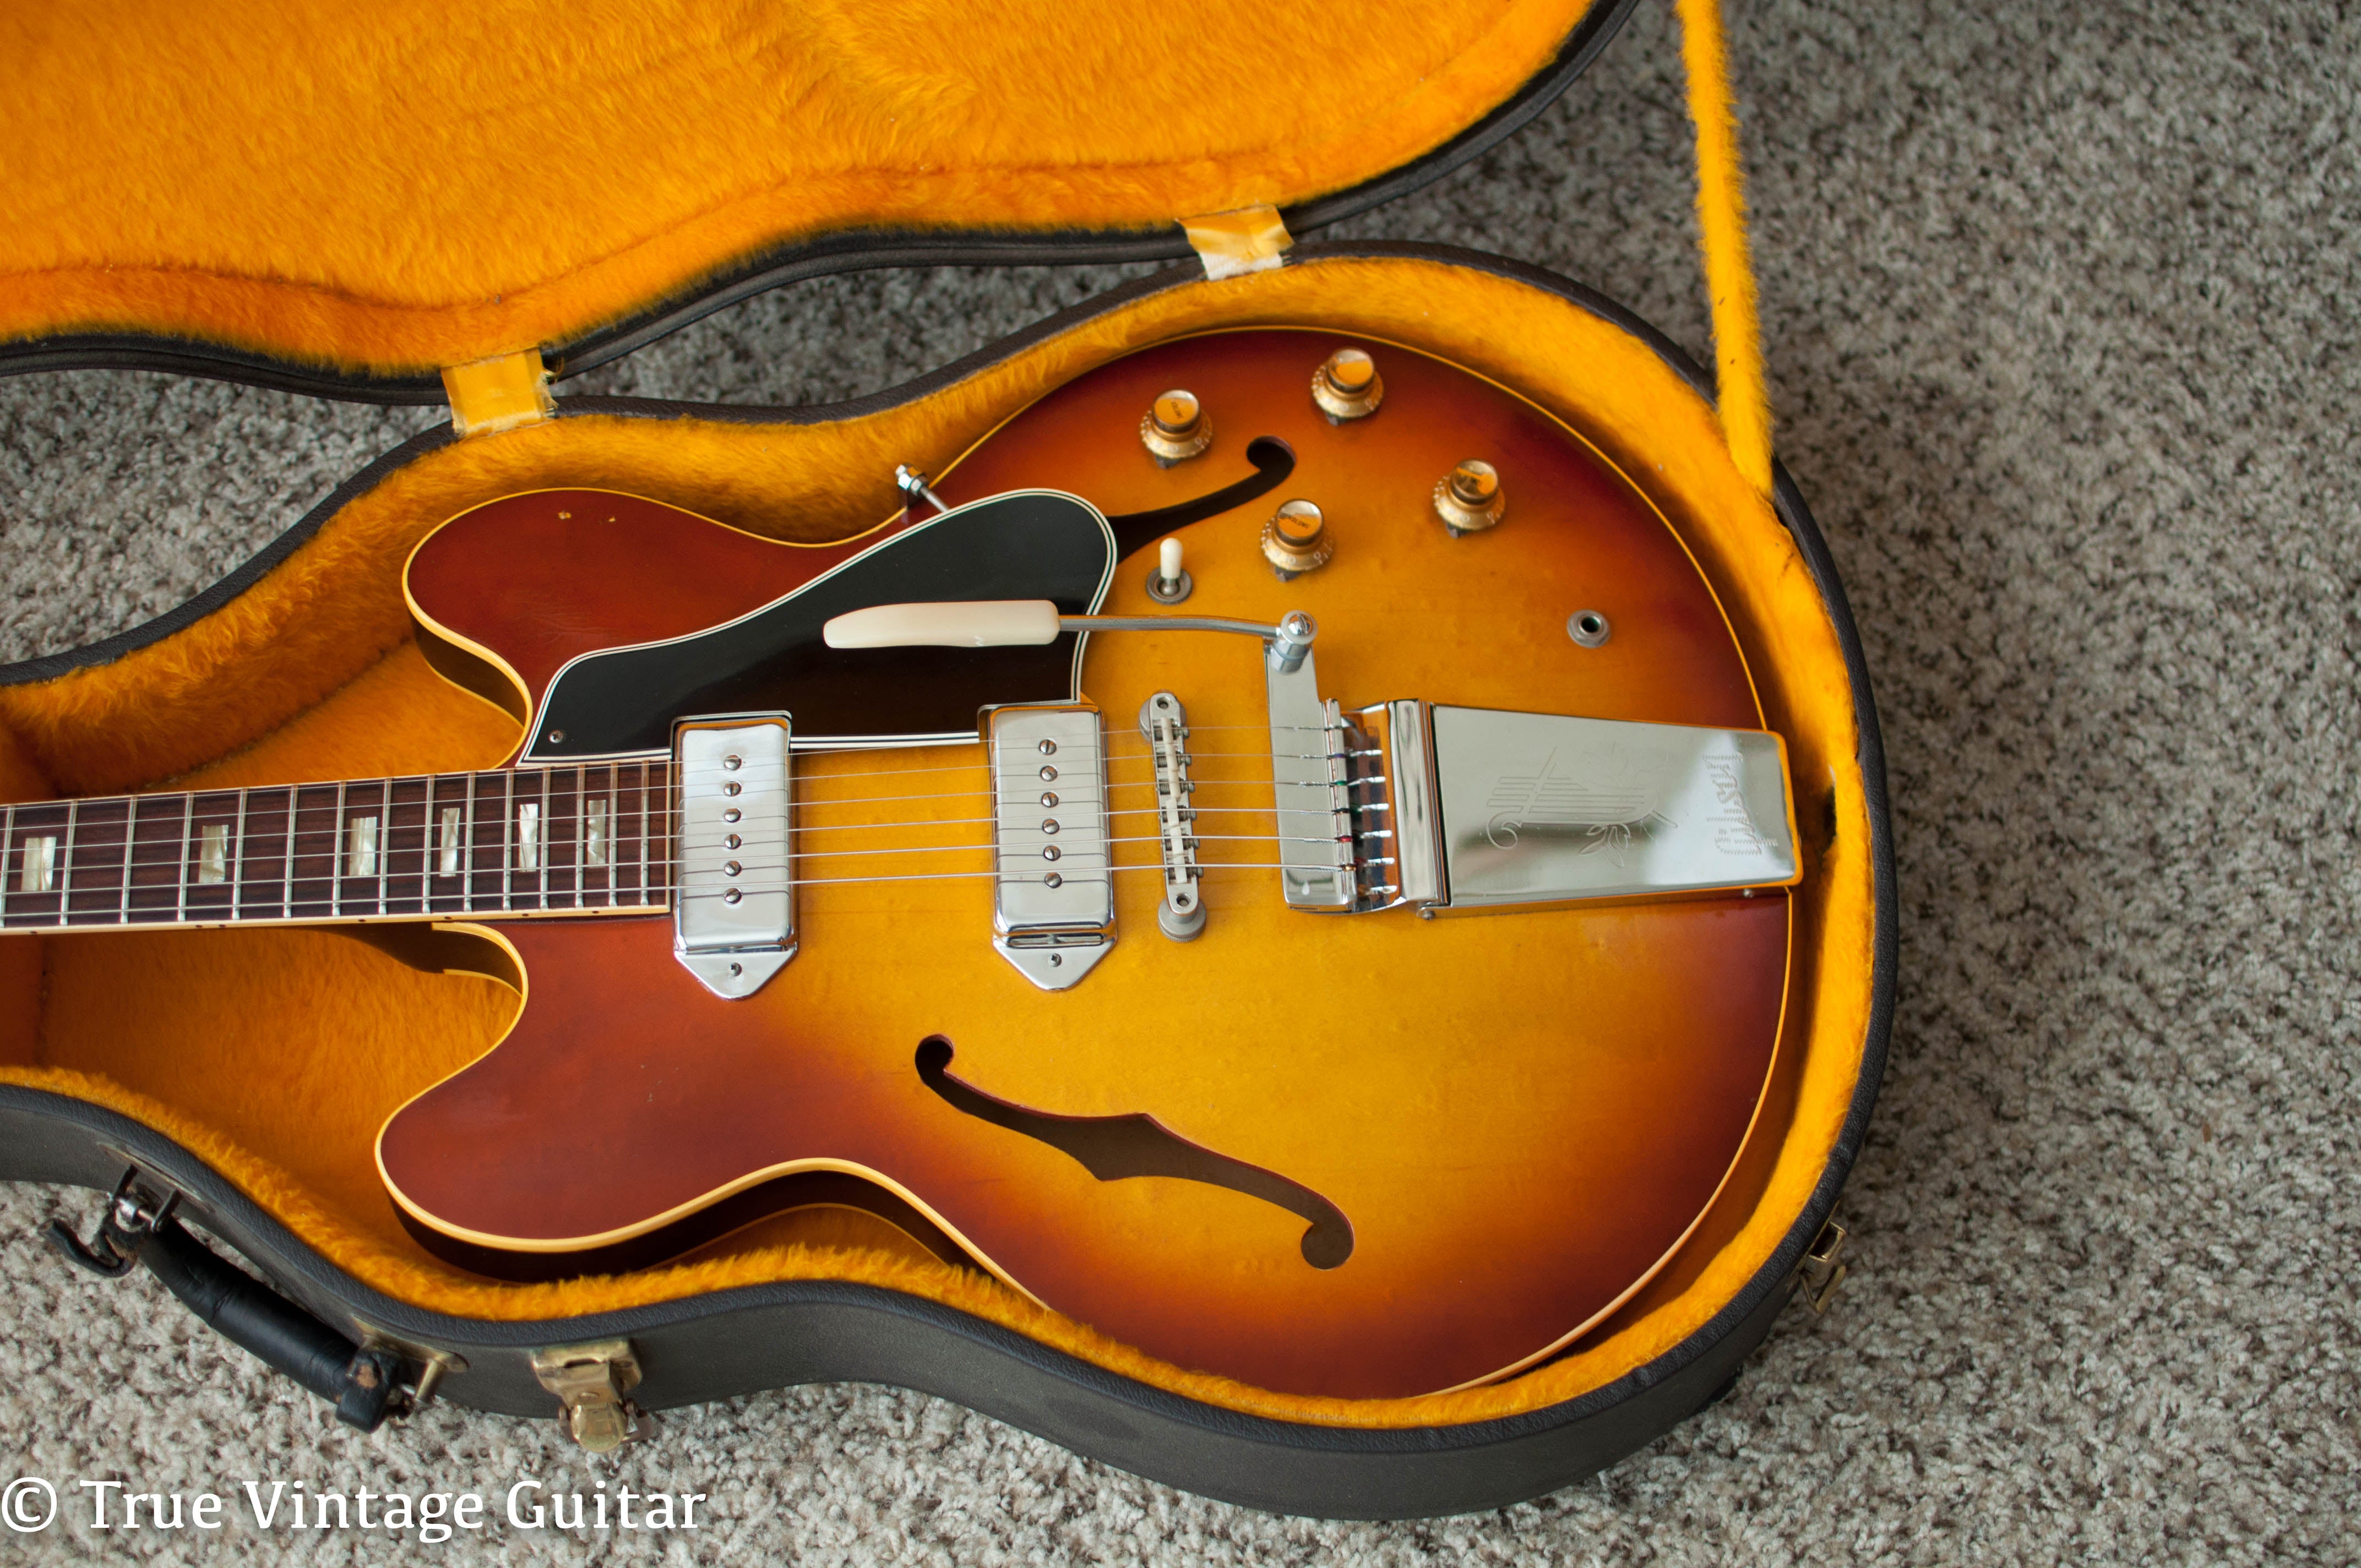 Vintage 1966 Gibson ES-330 electric guitar in original case